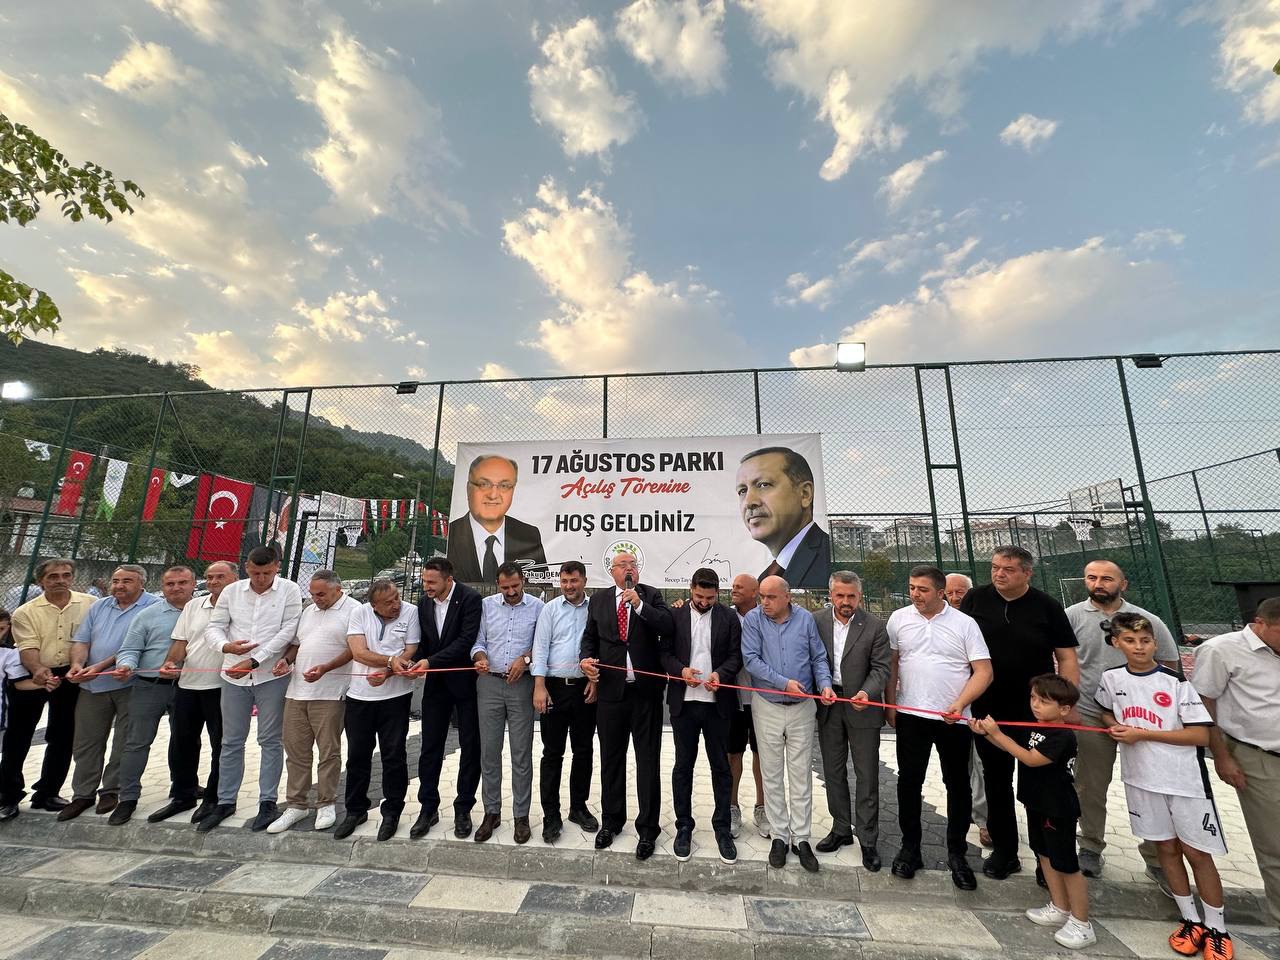 Düzce’de Marmara Depremi’nin yıl dönümünde “17 Ağustos Parkı” açıldı